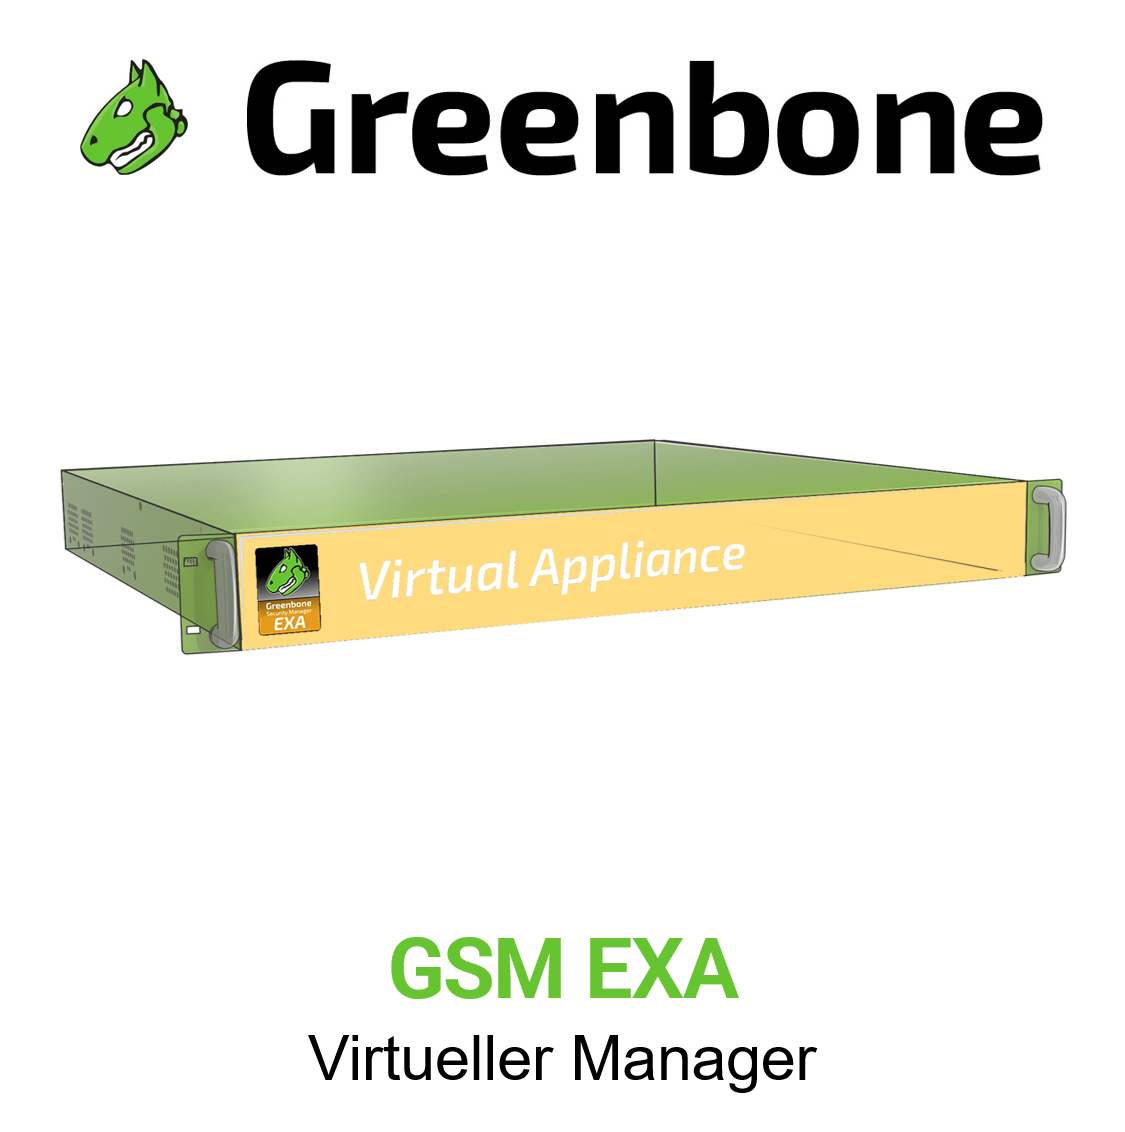 Greenbone GSM-EXA Virtuelle Appliance Vorschaubild mit Greenbone logo und Modellbezeichnung